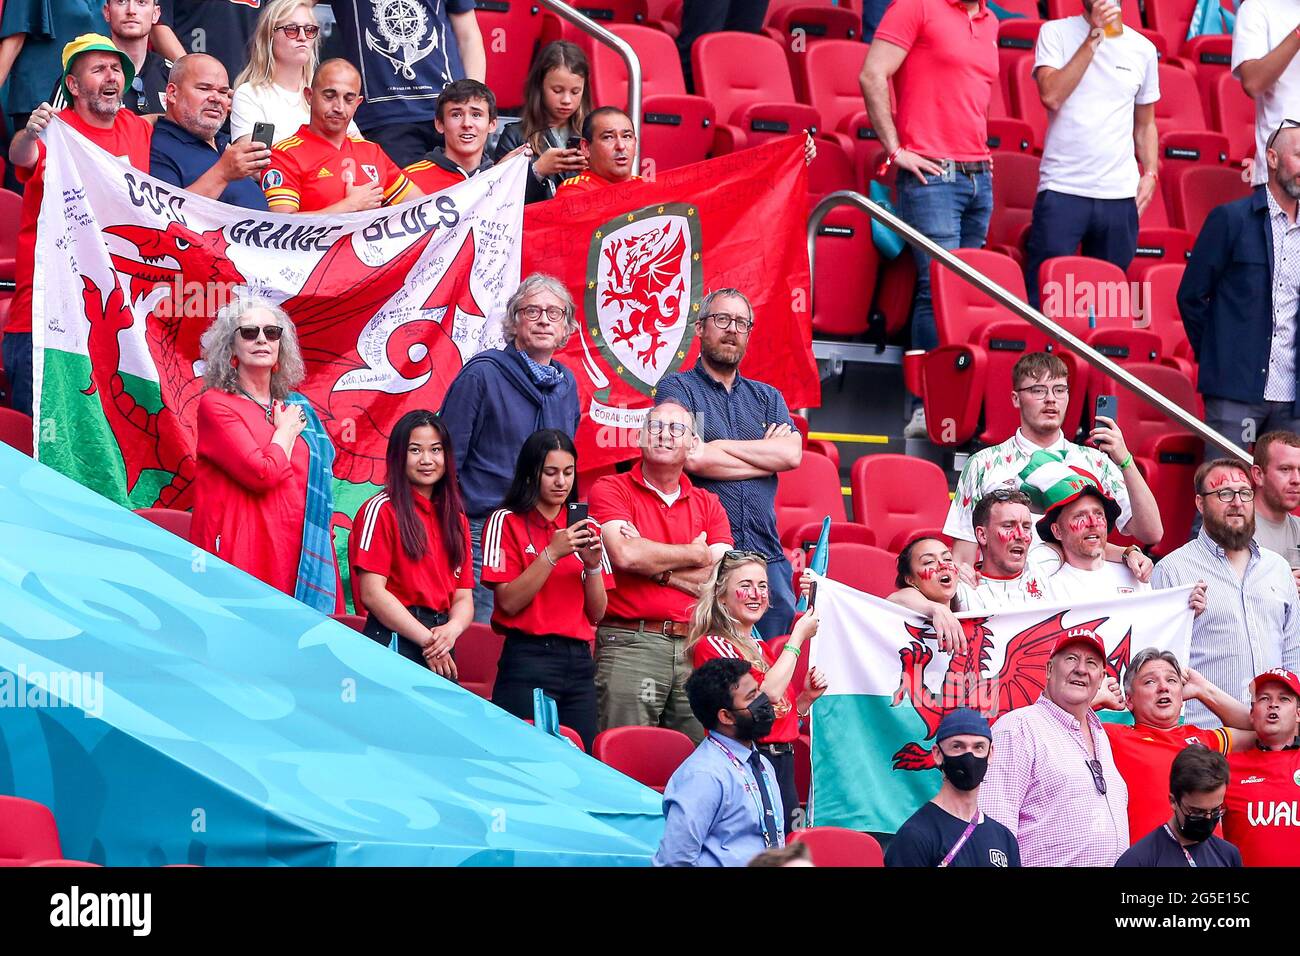 Tifosi del Galles prima del calcio d'inizio durante la partita UEFA Euro 2020 del 16 che si tiene alla Johan Cruijff Arena di Amsterdam, Paesi Bassi. Data immagine: Sabato 26 giugno 2021. Foto Stock